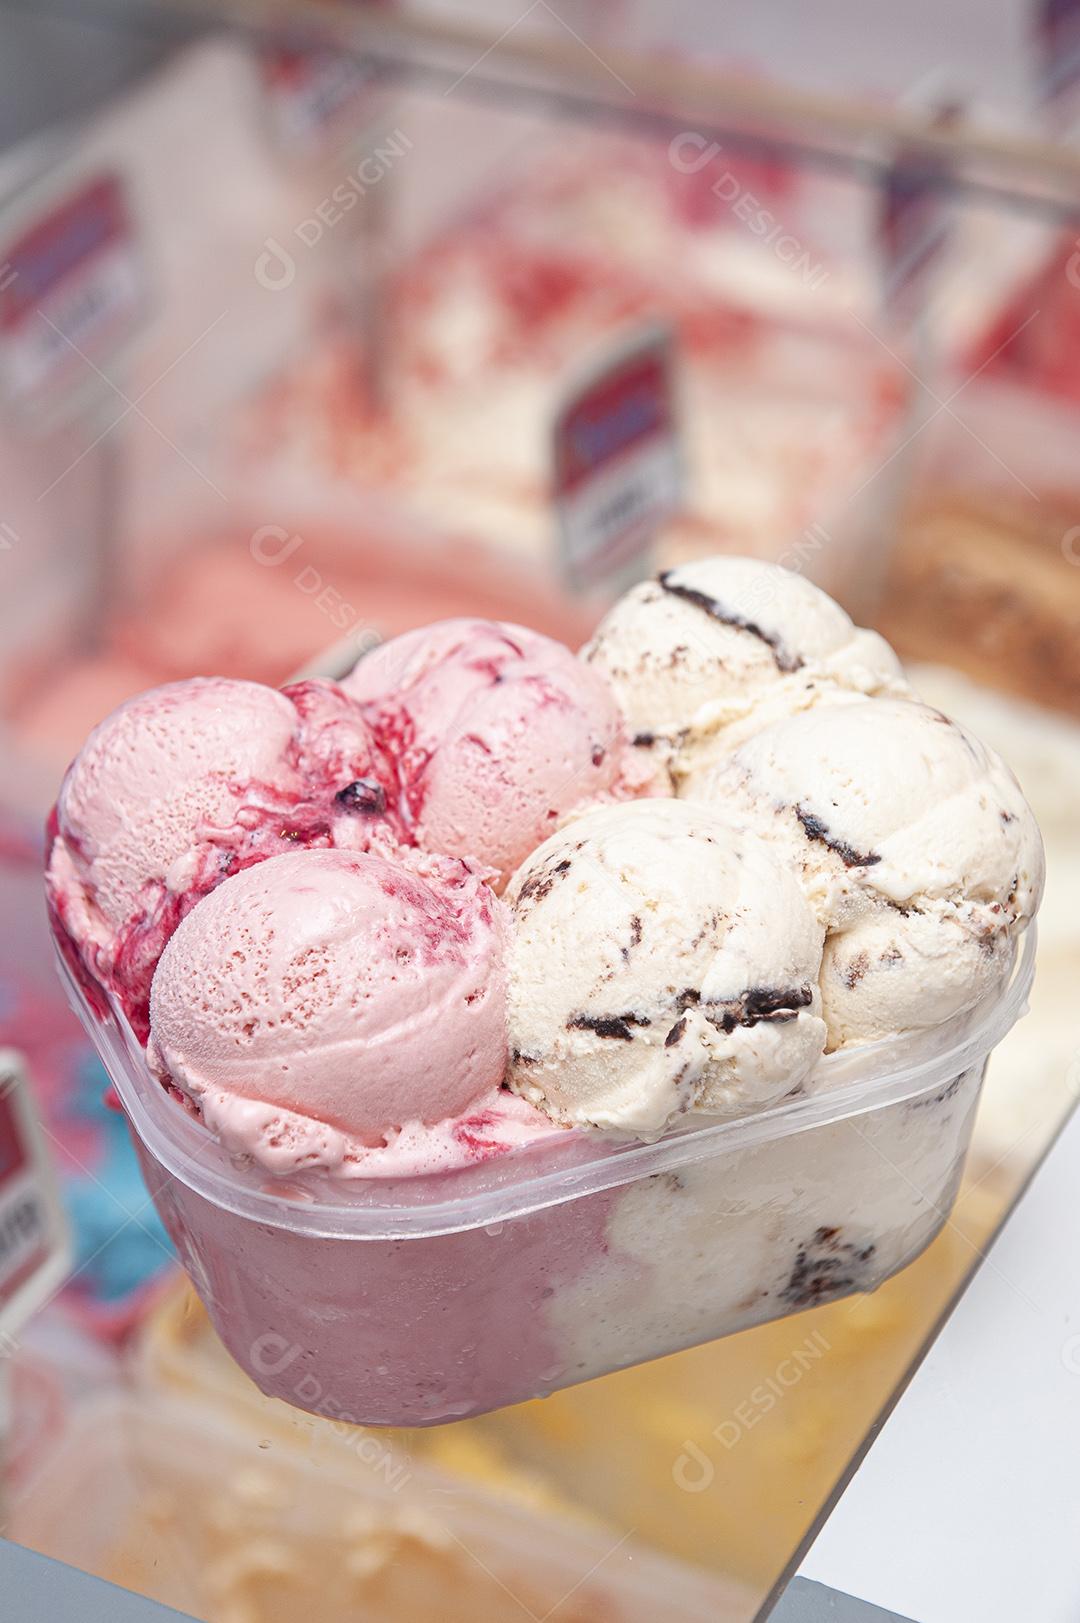 Grande pote de sorvete no balcão de uma sorveteria.